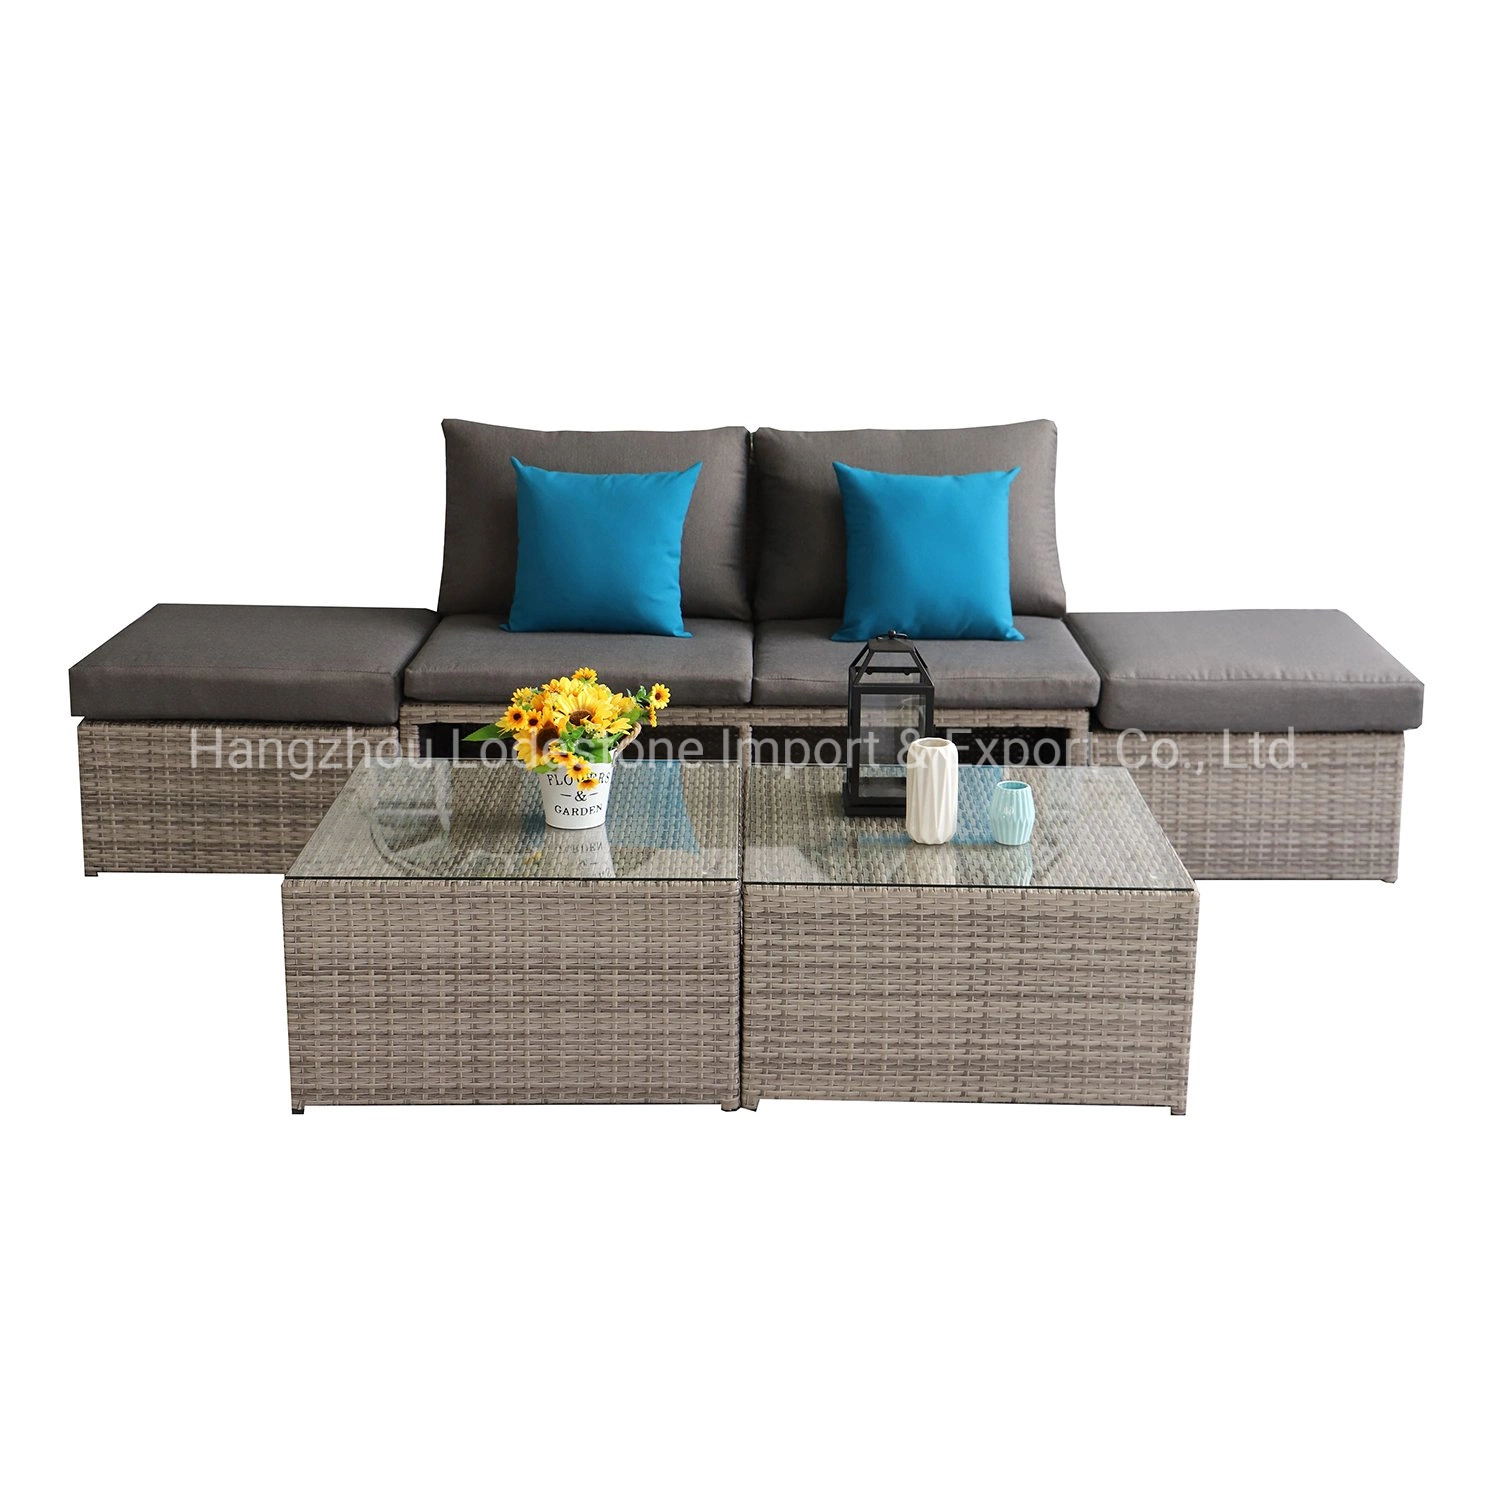 New Patio Garden Furniture Waterproof Hotel Outdoor Sectional Rattan Sofa Set